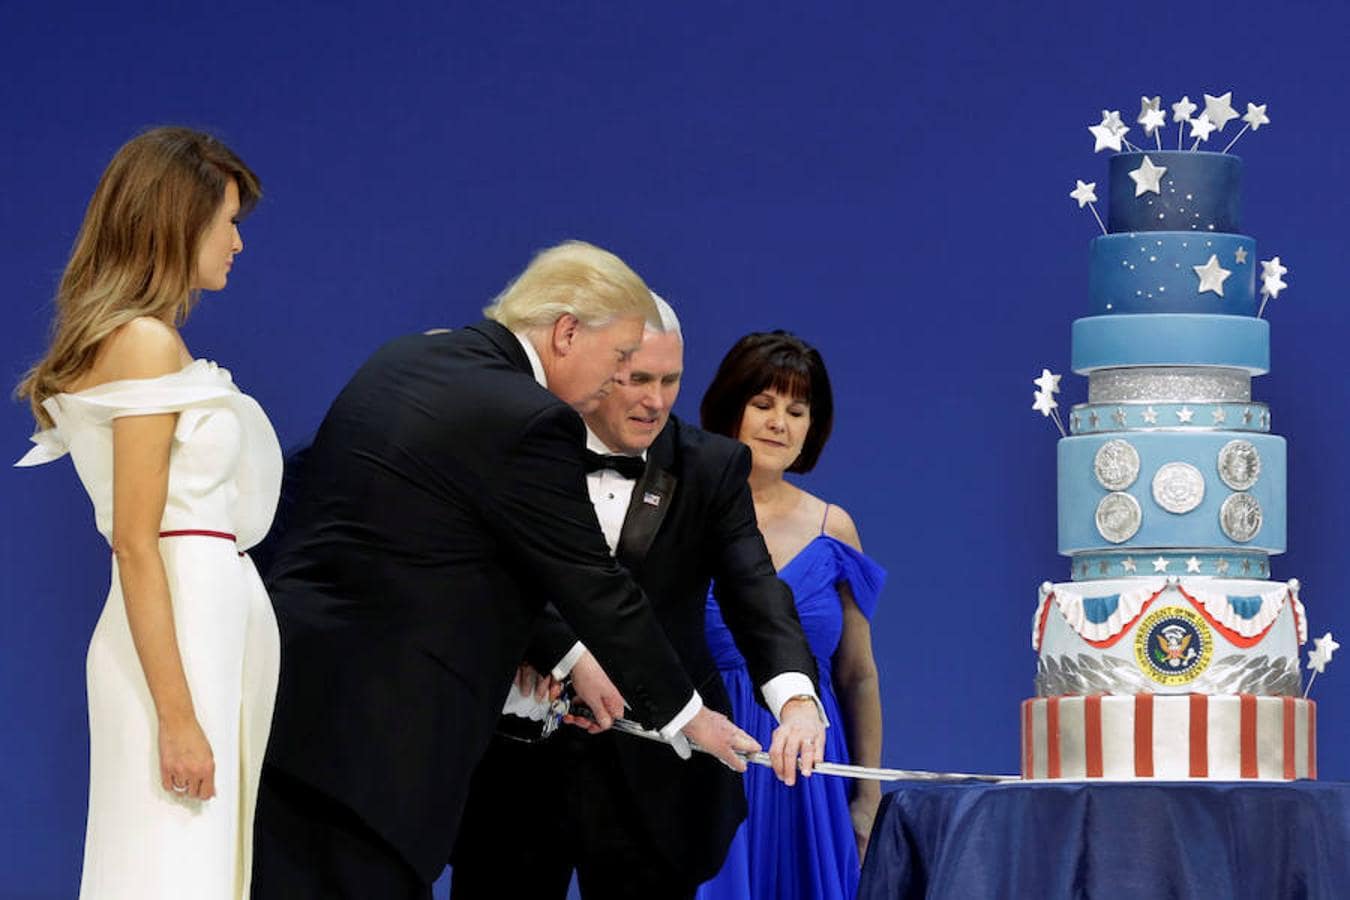 Trump y Pence han sido los encargados de partir la tarta del baile en honor a las Fuerzas Armadas, otra de las citas de la noche.